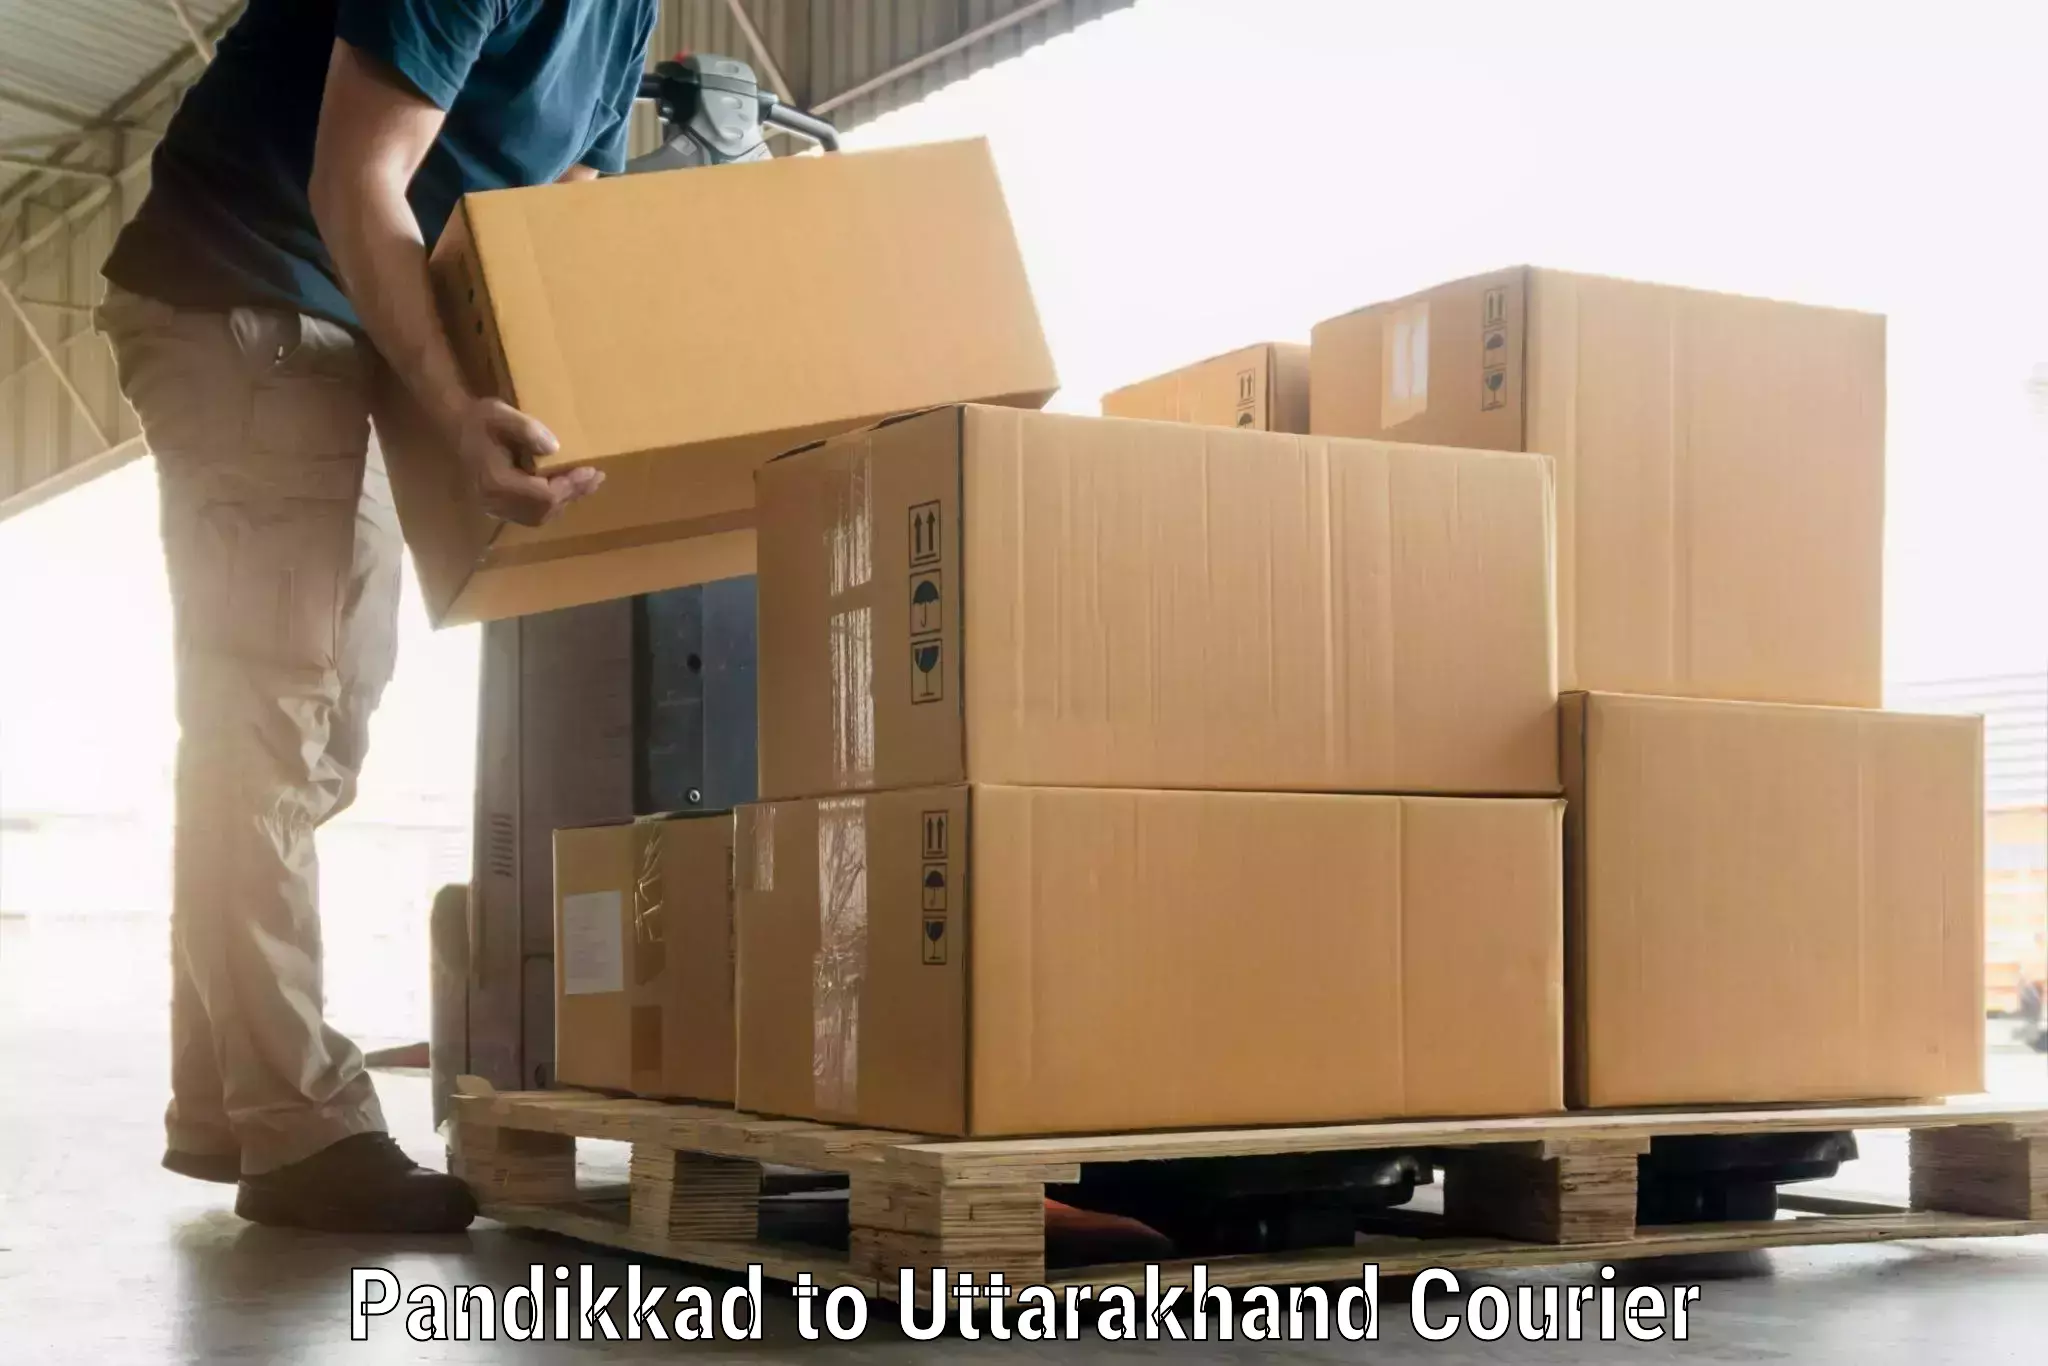 Luggage delivery logistics Pandikkad to Uttarakhand